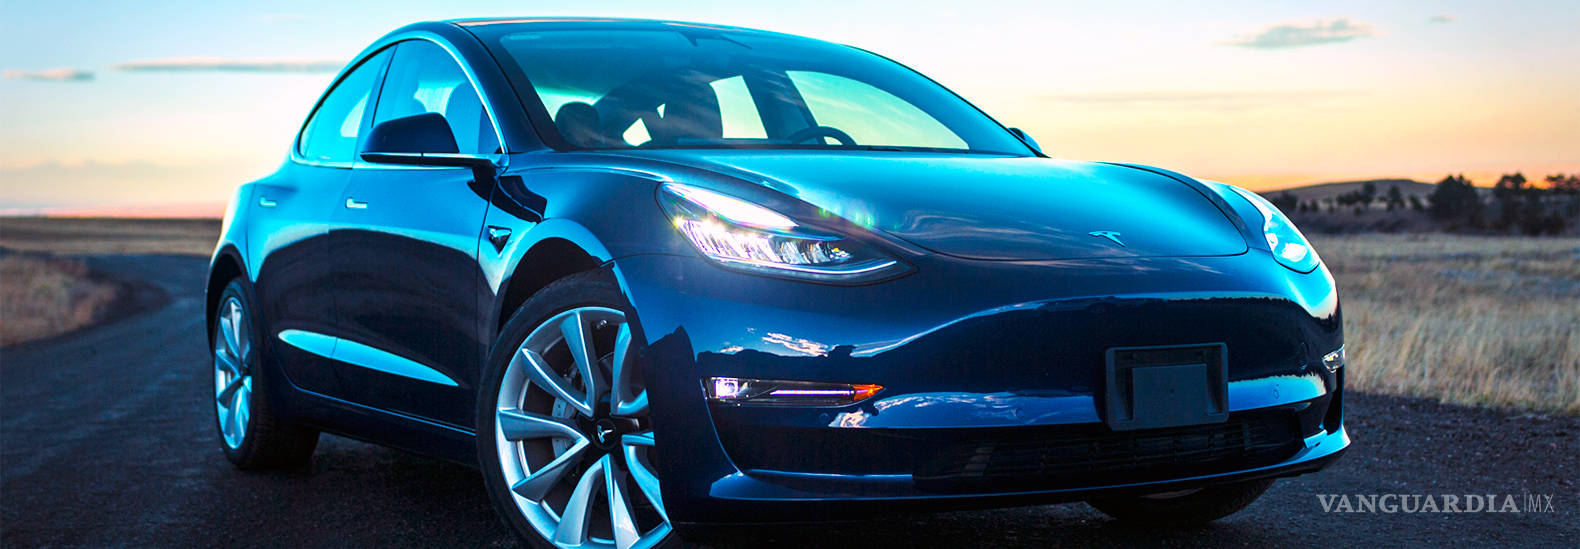 $!El Tesla Model 3 seguirá sin ser tan accesible como se pretendía: Elon Musk